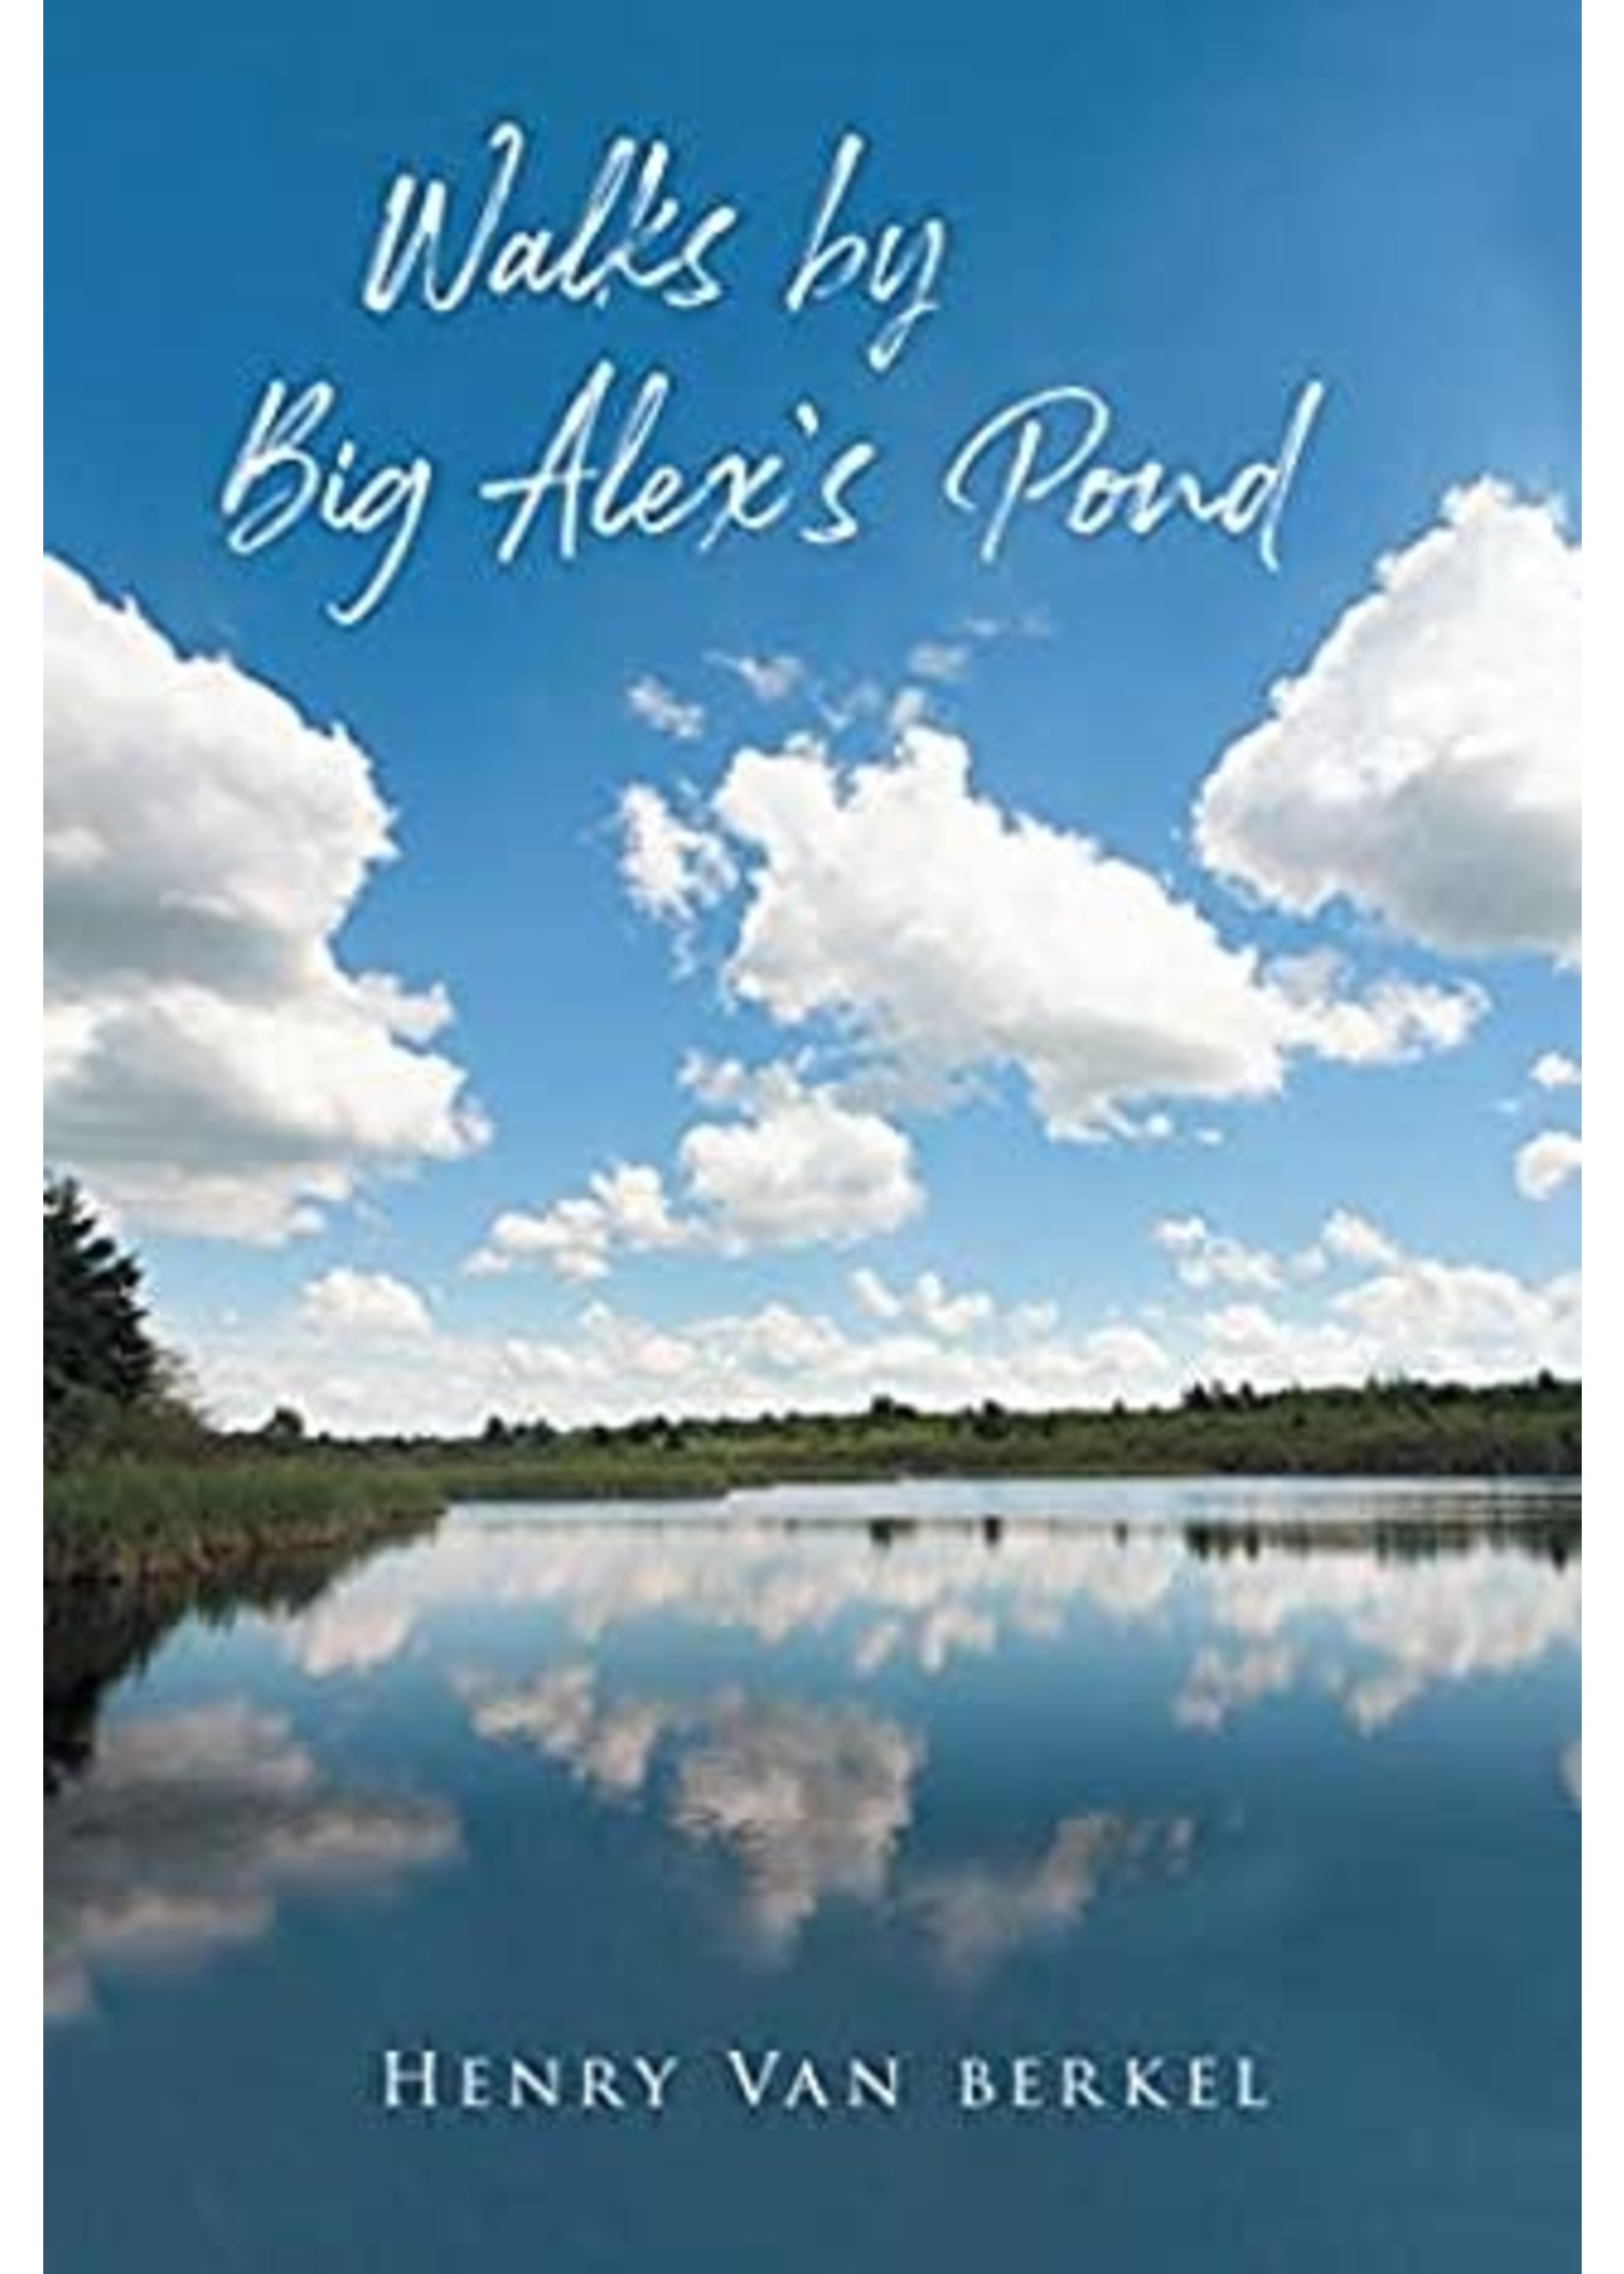 Walks by Big Alex's Pond by Henry Van Berkel